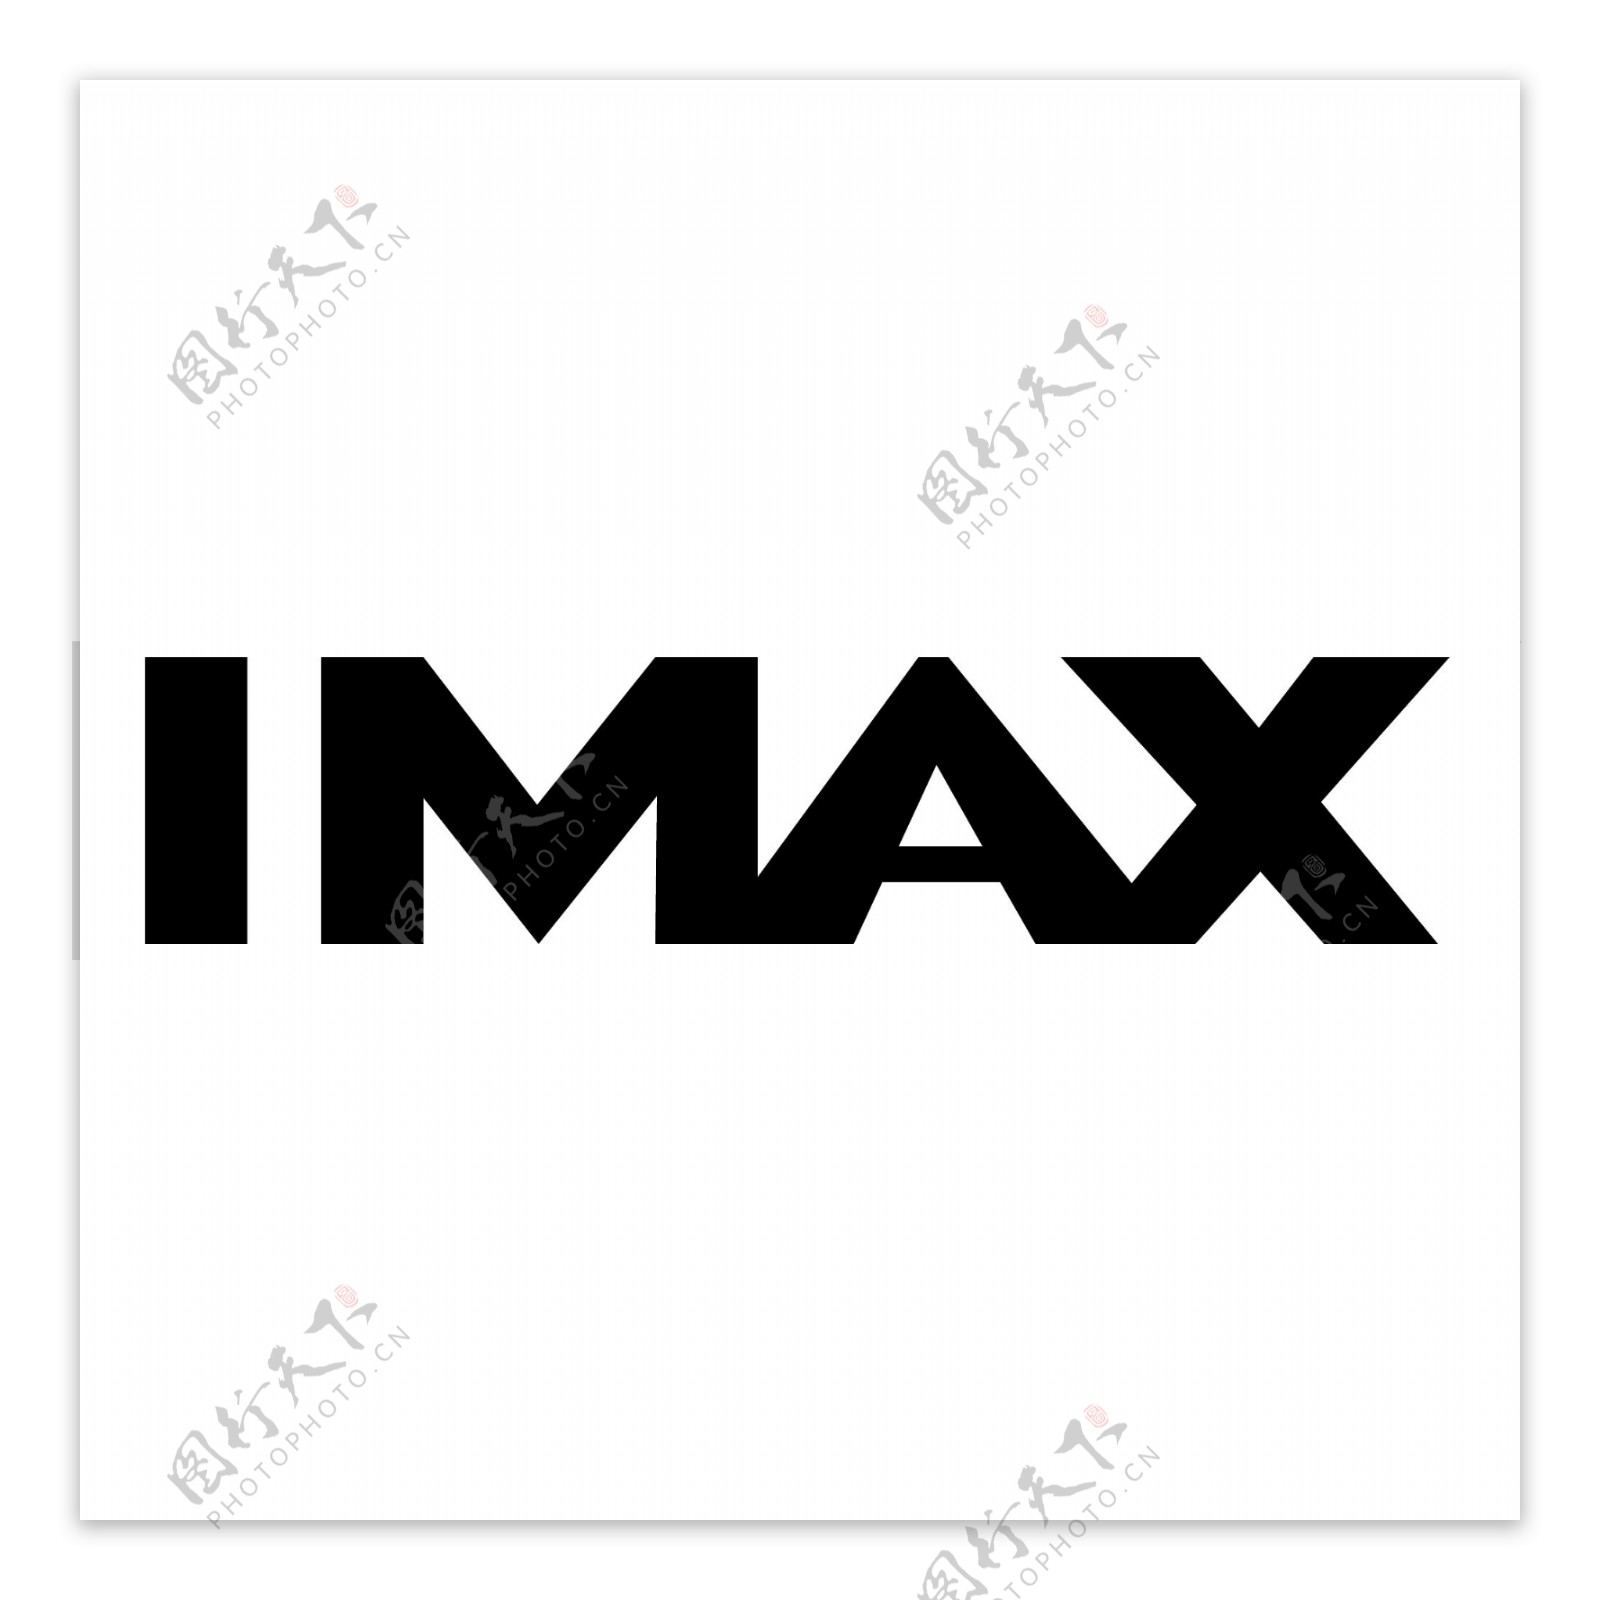 IMAX182